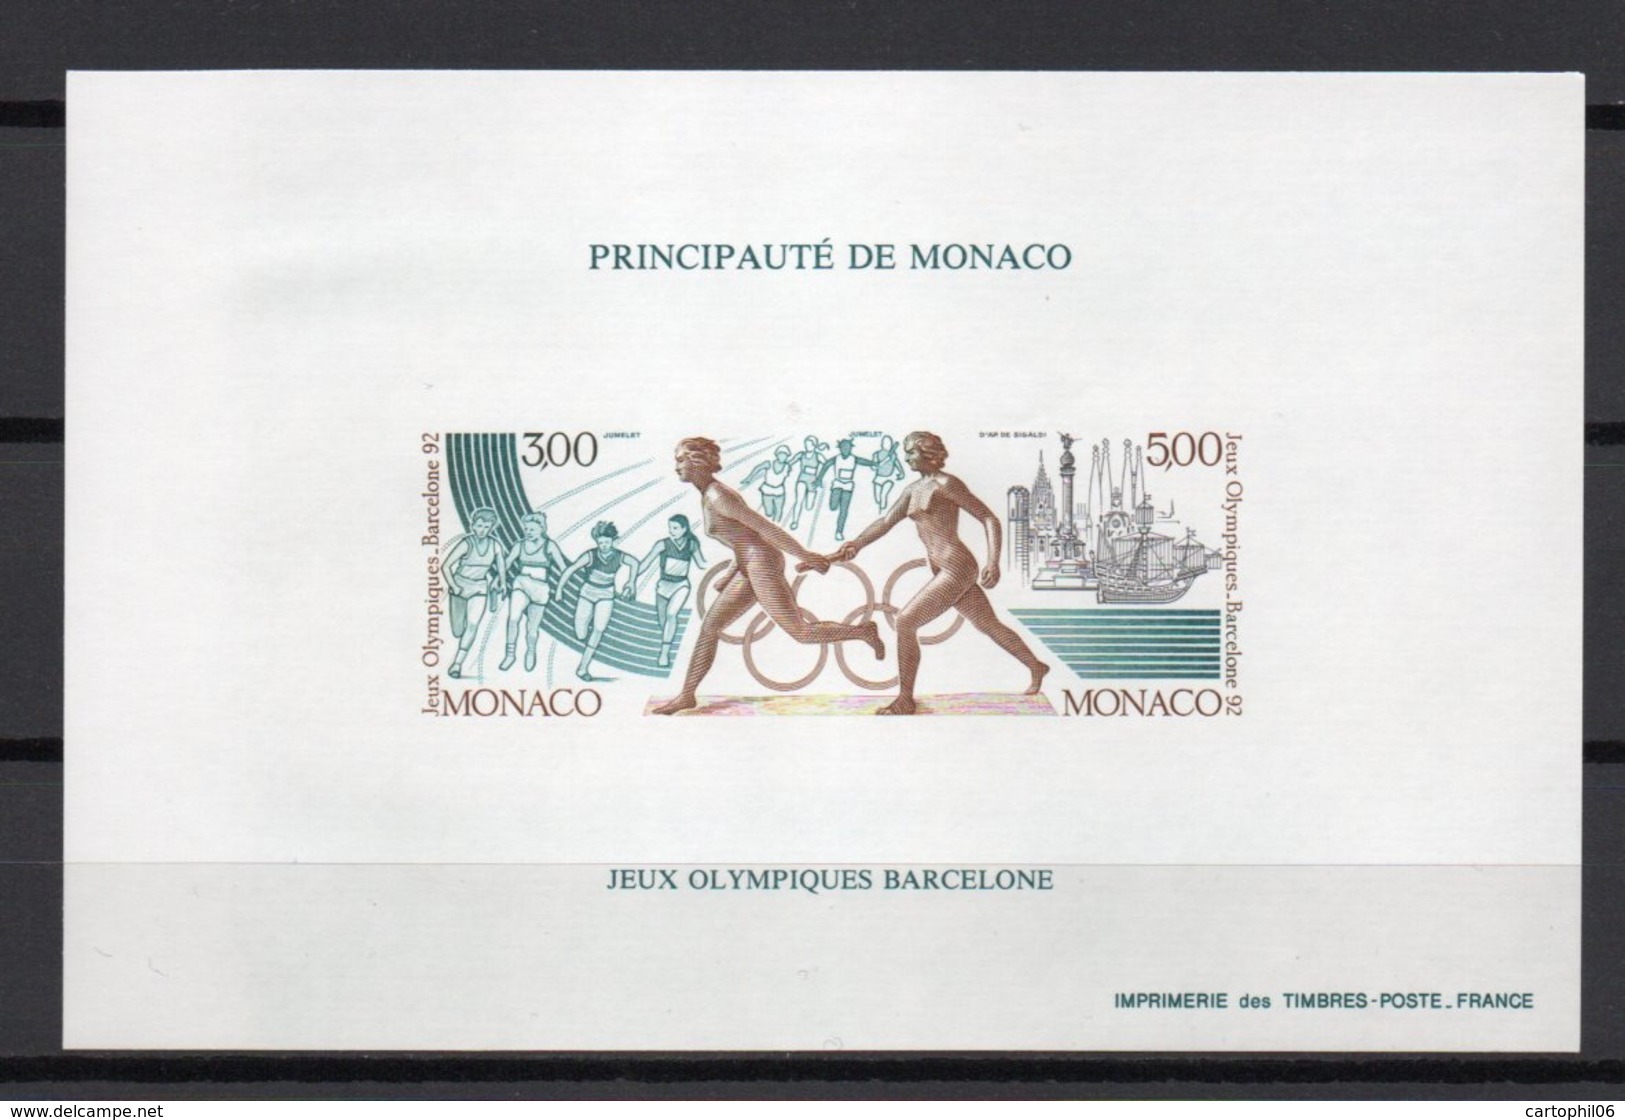 - MONACO Bloc Spécial N° 16a Neuf ** NON DENTELÉ - Jeux Olympiques BARCELONE 1992 - - Blocs